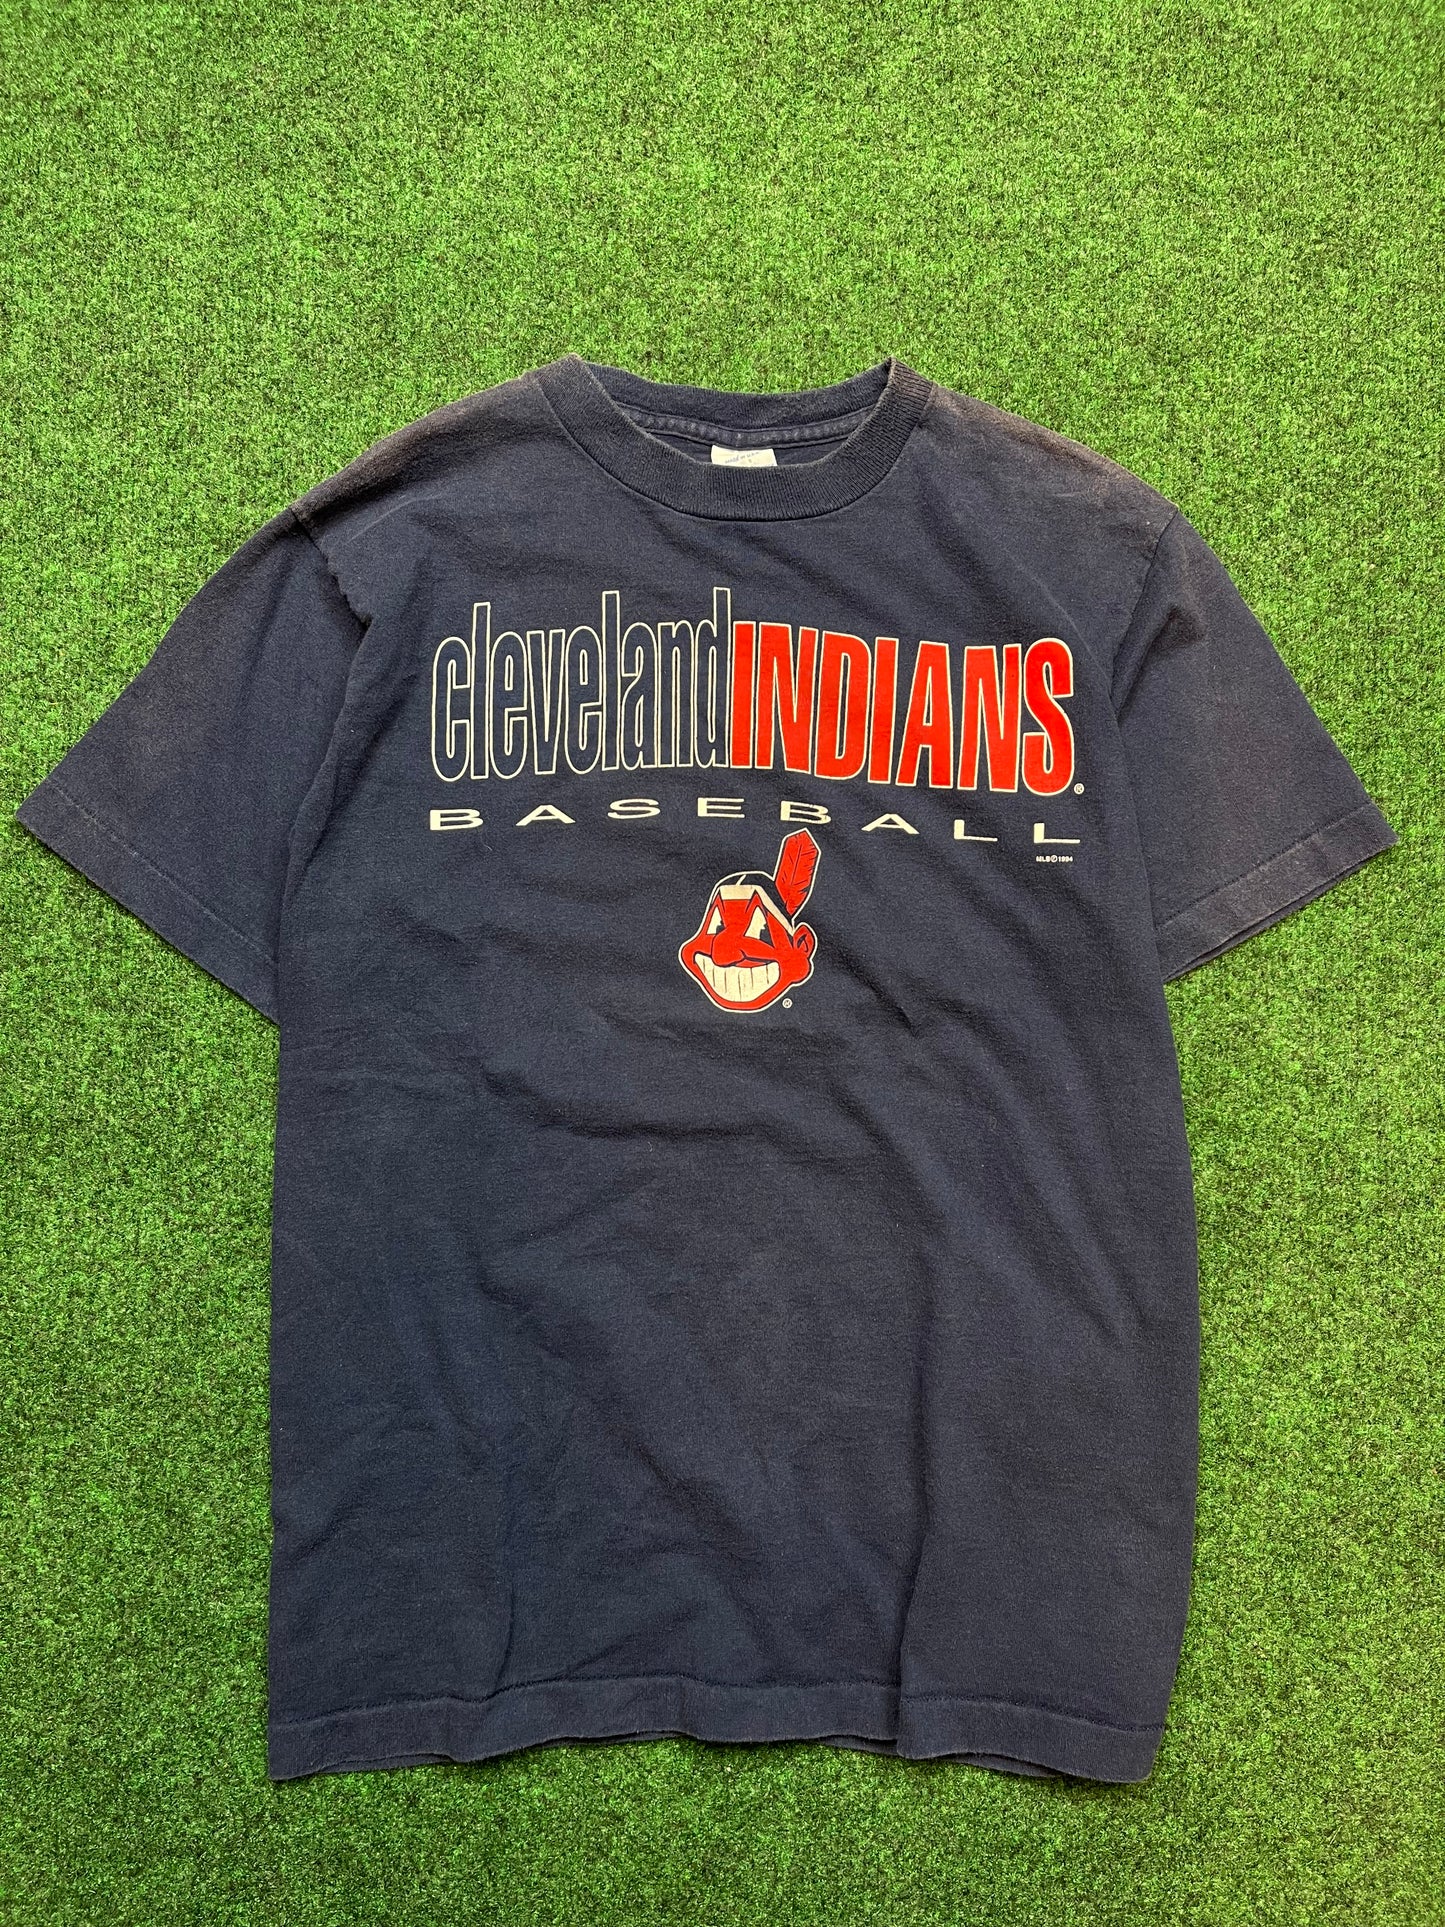 1994 Cleveland Indians Vintage MLB Tee (Medium)